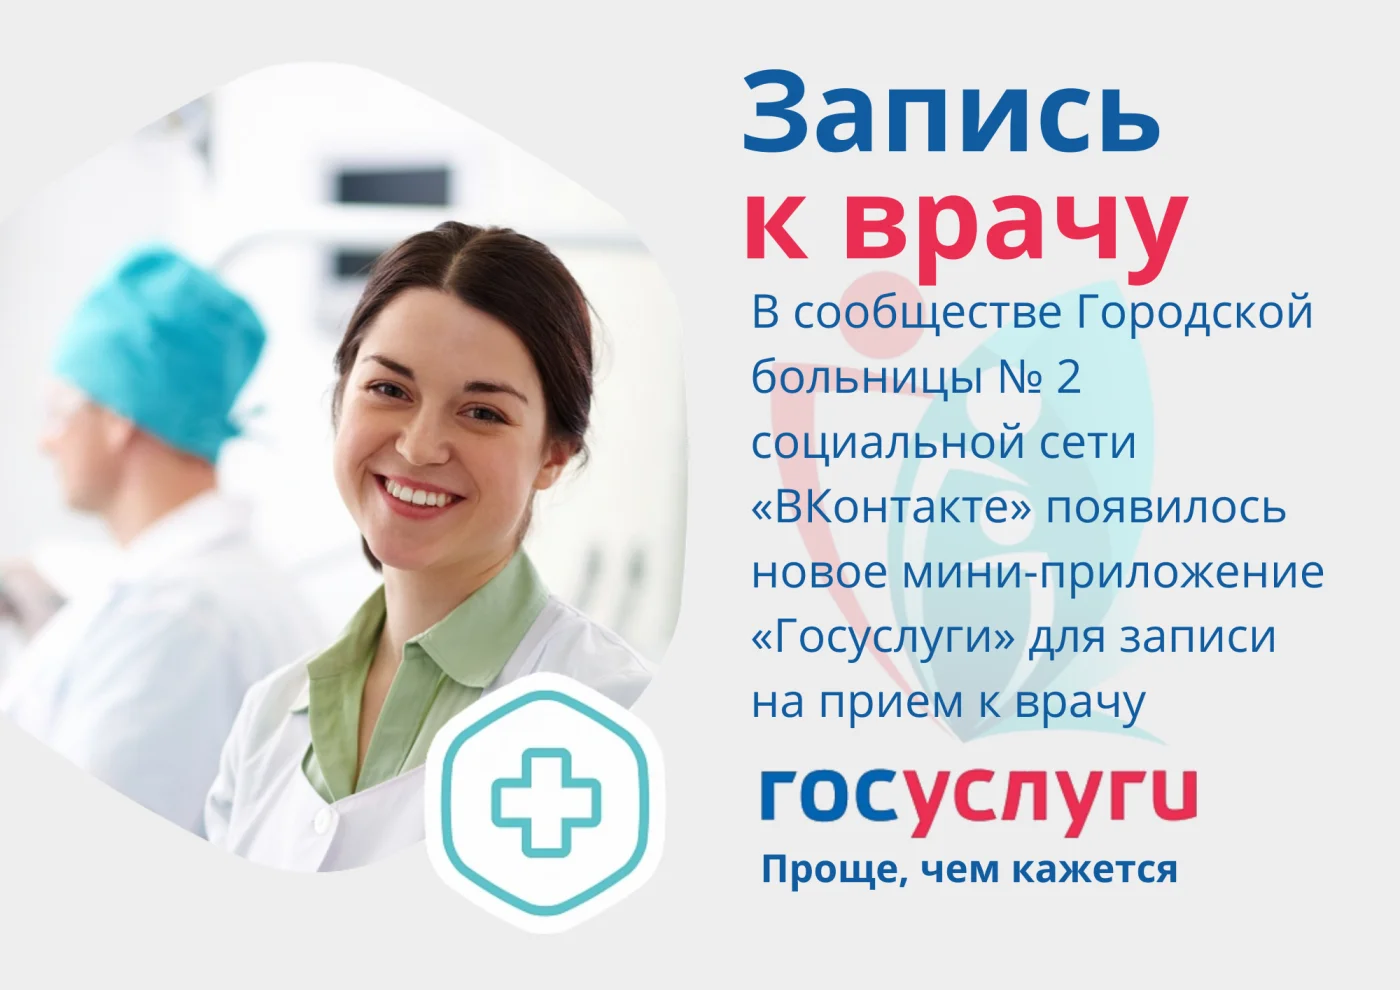 Пациенты Городской больницы № 2 могут записаться к врачу через госпаблик в соцсети "ВКонтакте"